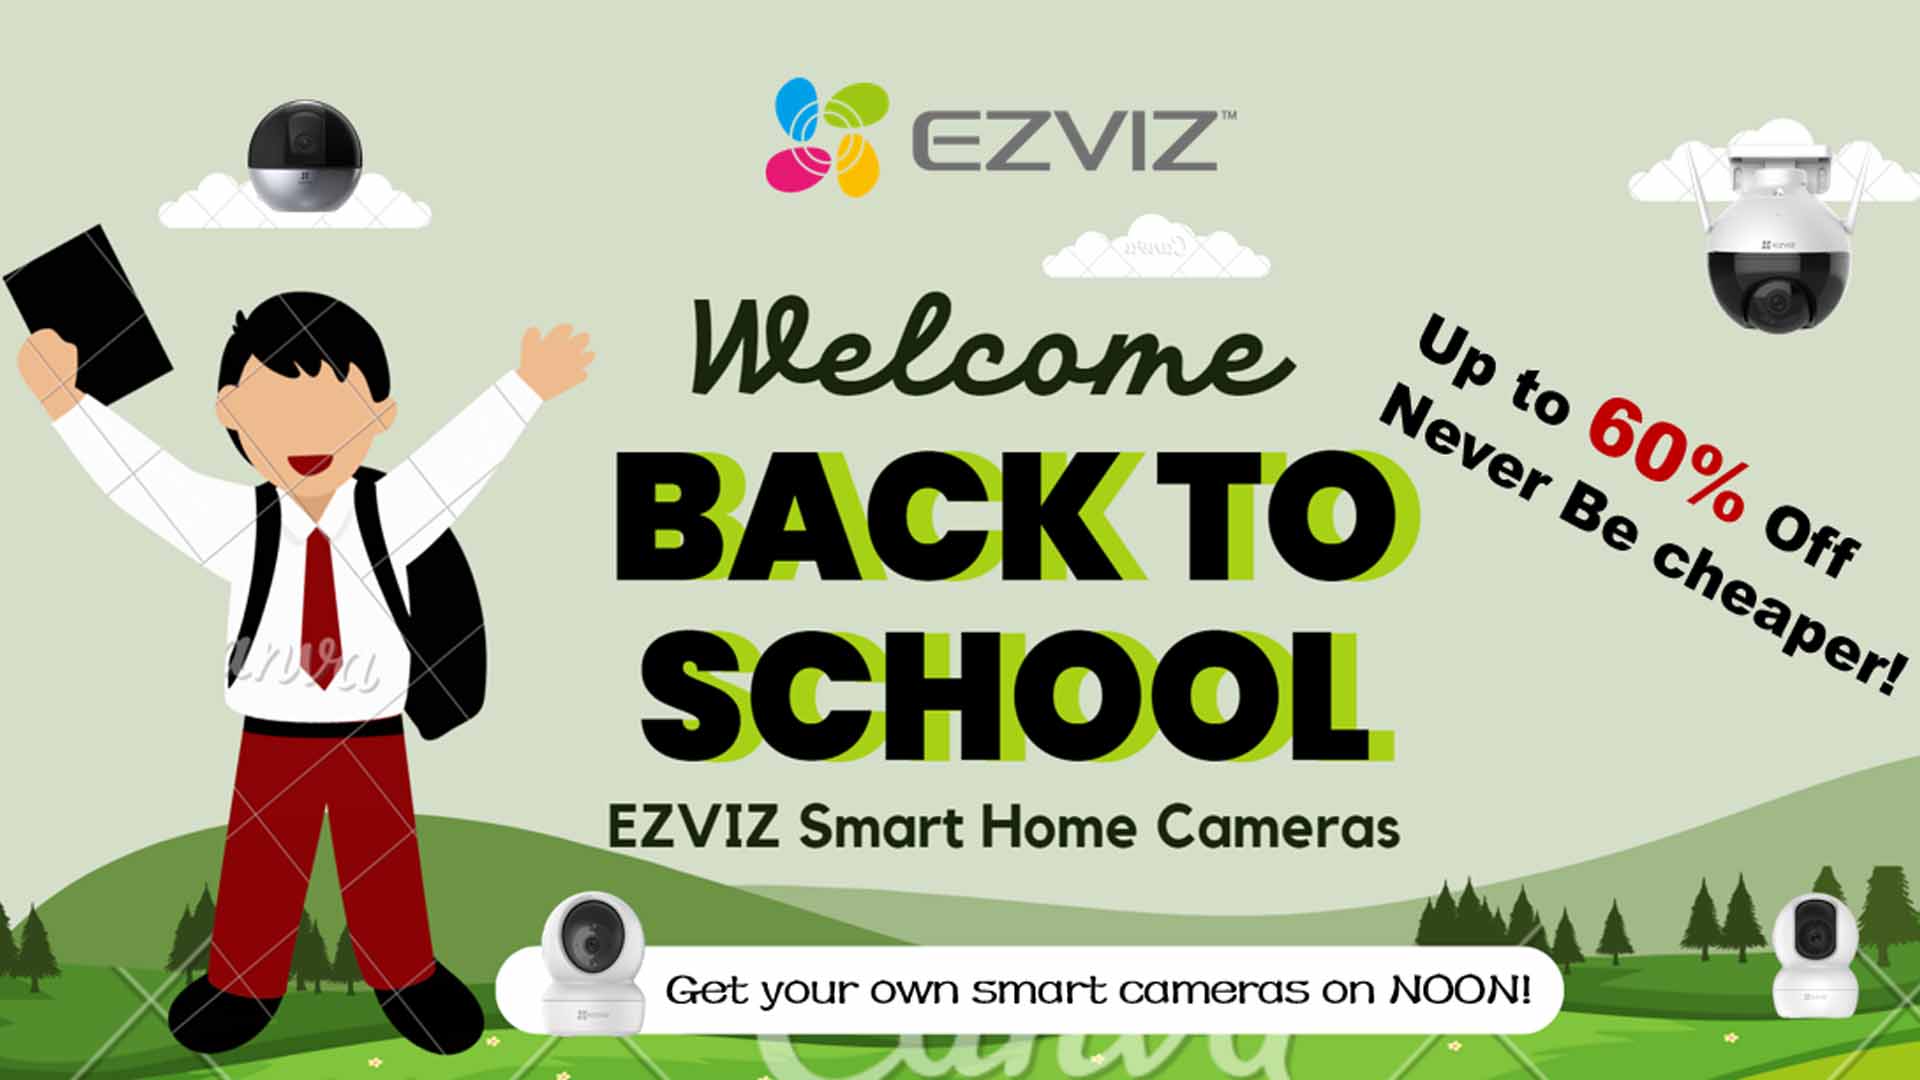 شركة EZVIZ تُظهر التزامها بالبيئة في موسم العودة للمدارس بالسعودية من خلال عروض خضراء ومبادرات عالمية مستدامة